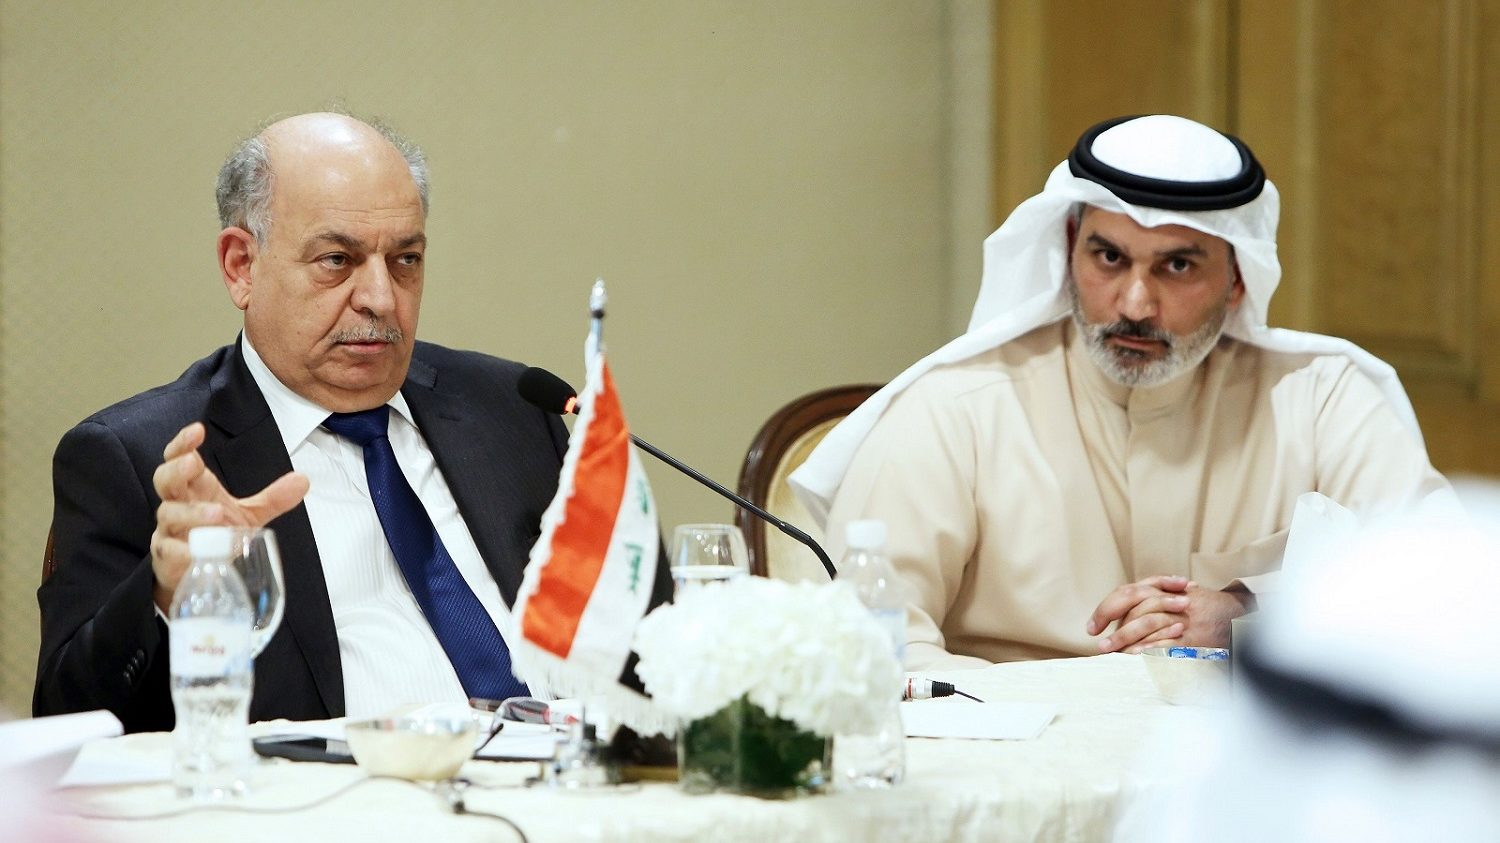 Finally, a Khaleeji in the OPEC Presidency